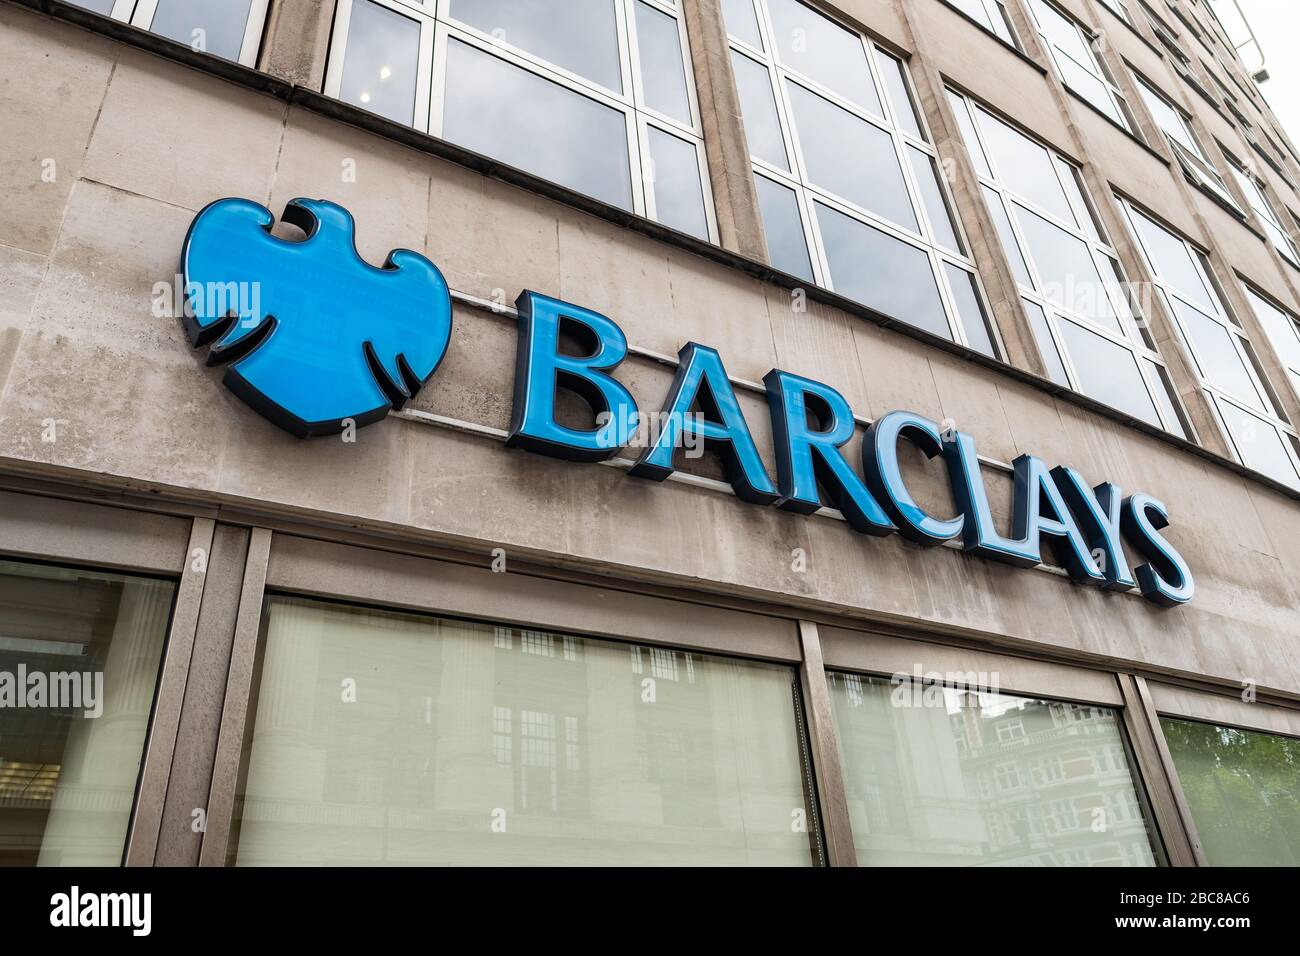 Affichage de la succursale de la banque de rue Barclays - Londres, Royaume-Uni Banque D'Images